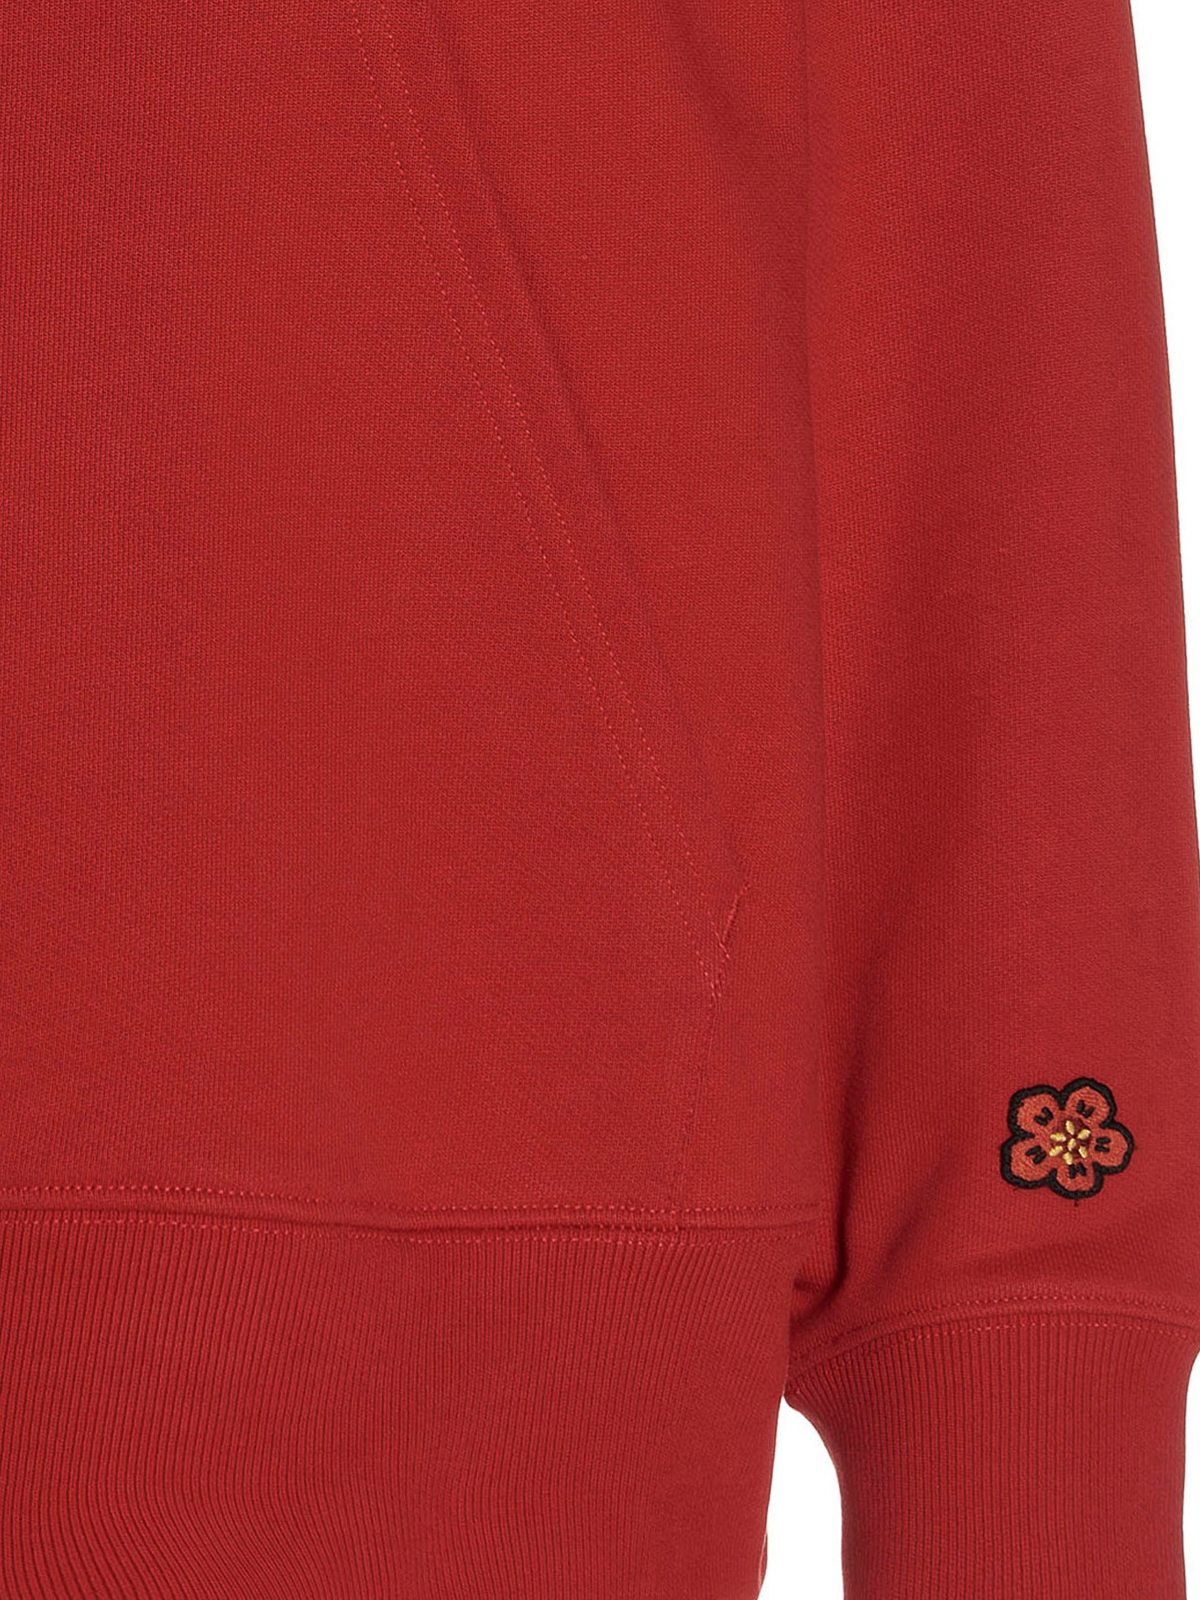 Shop Kenzo Logo Print Hoodie In Rojo